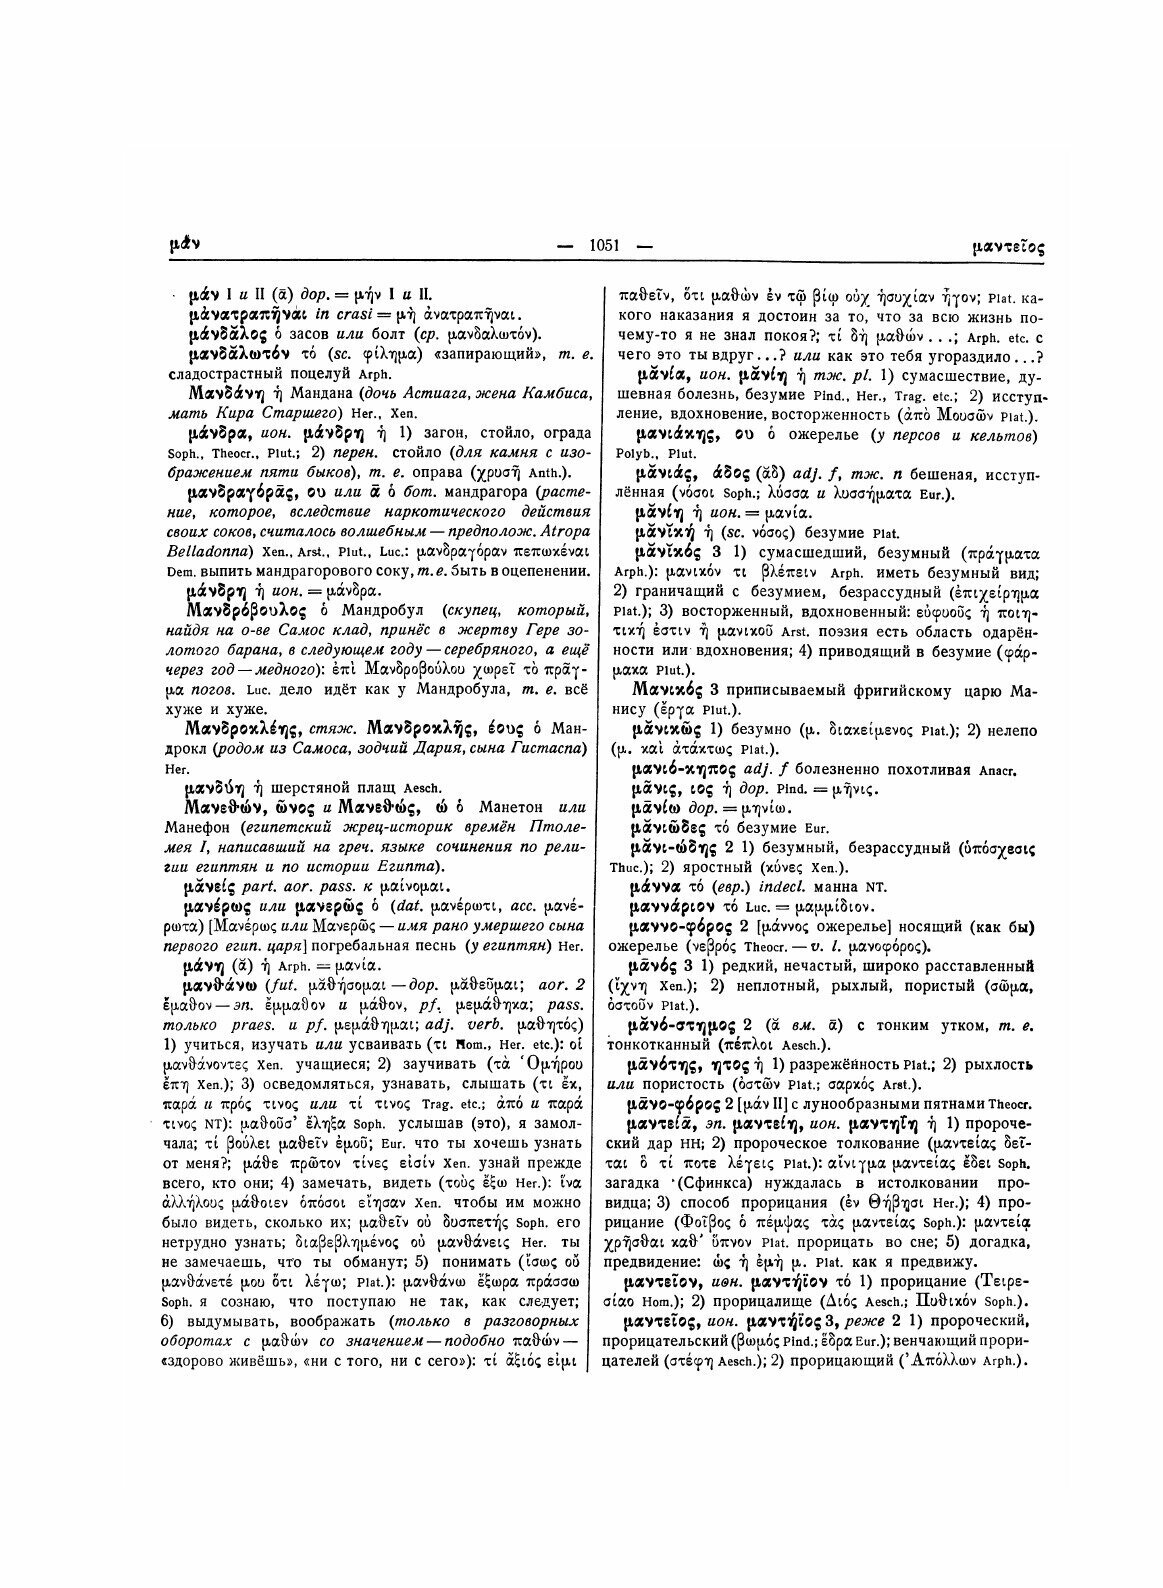 Древнегреческо-русский словарь. Том 2